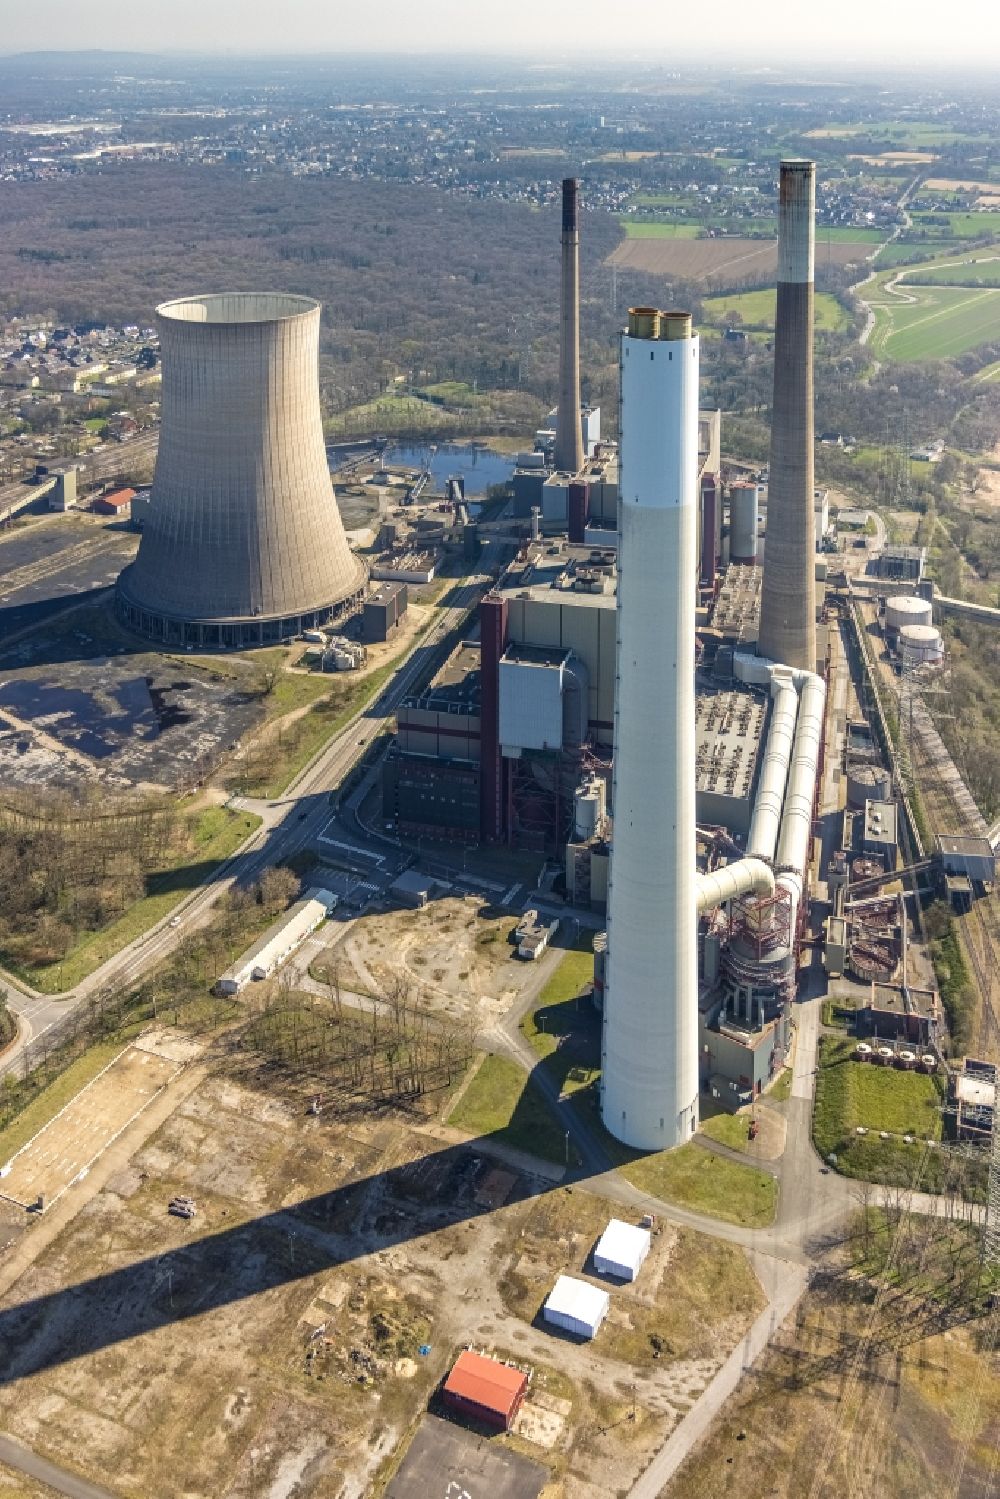 Möllen von oben - Kraftwerksanlagen des Kohle- Heizkraftwerkes der Steag Energy Services GmbH in Möllen im Bundesland Nordrhein-Westfalen